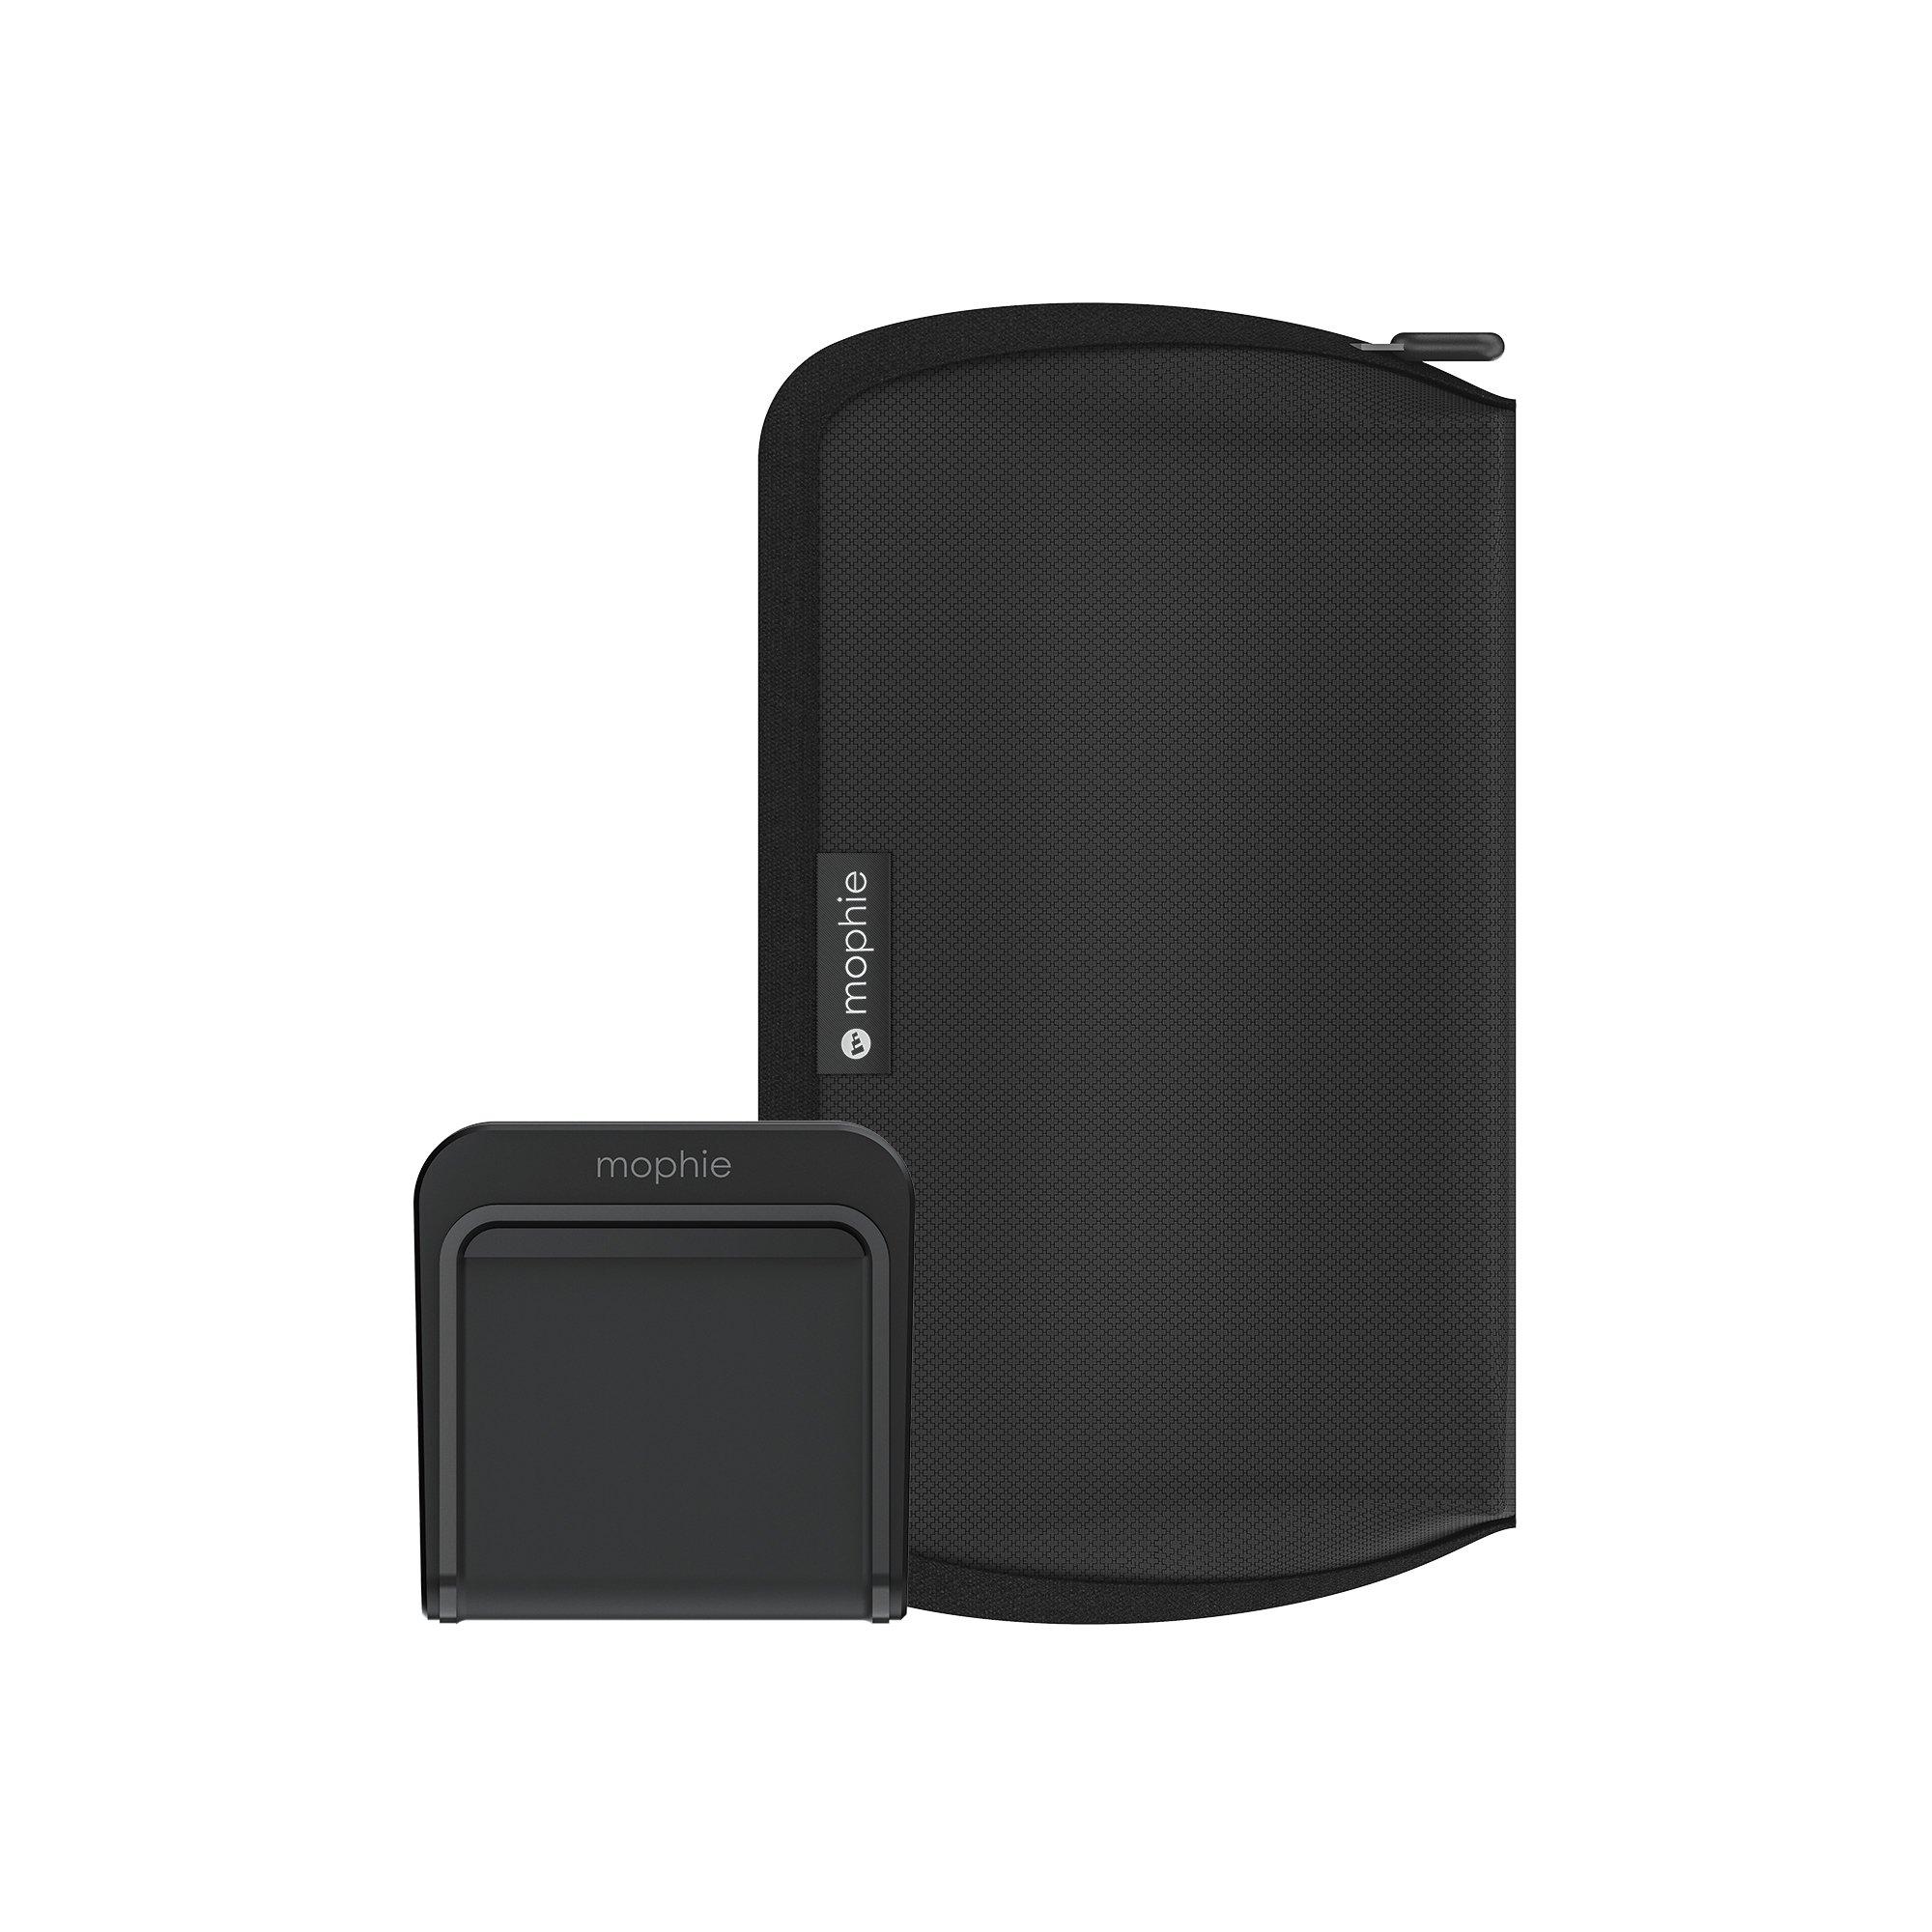 mophie  401302090 chargeur d'appareils mobiles Smartphone Noir Secteur, Allume-cigare, USB Recharge sans fil Intérieure 